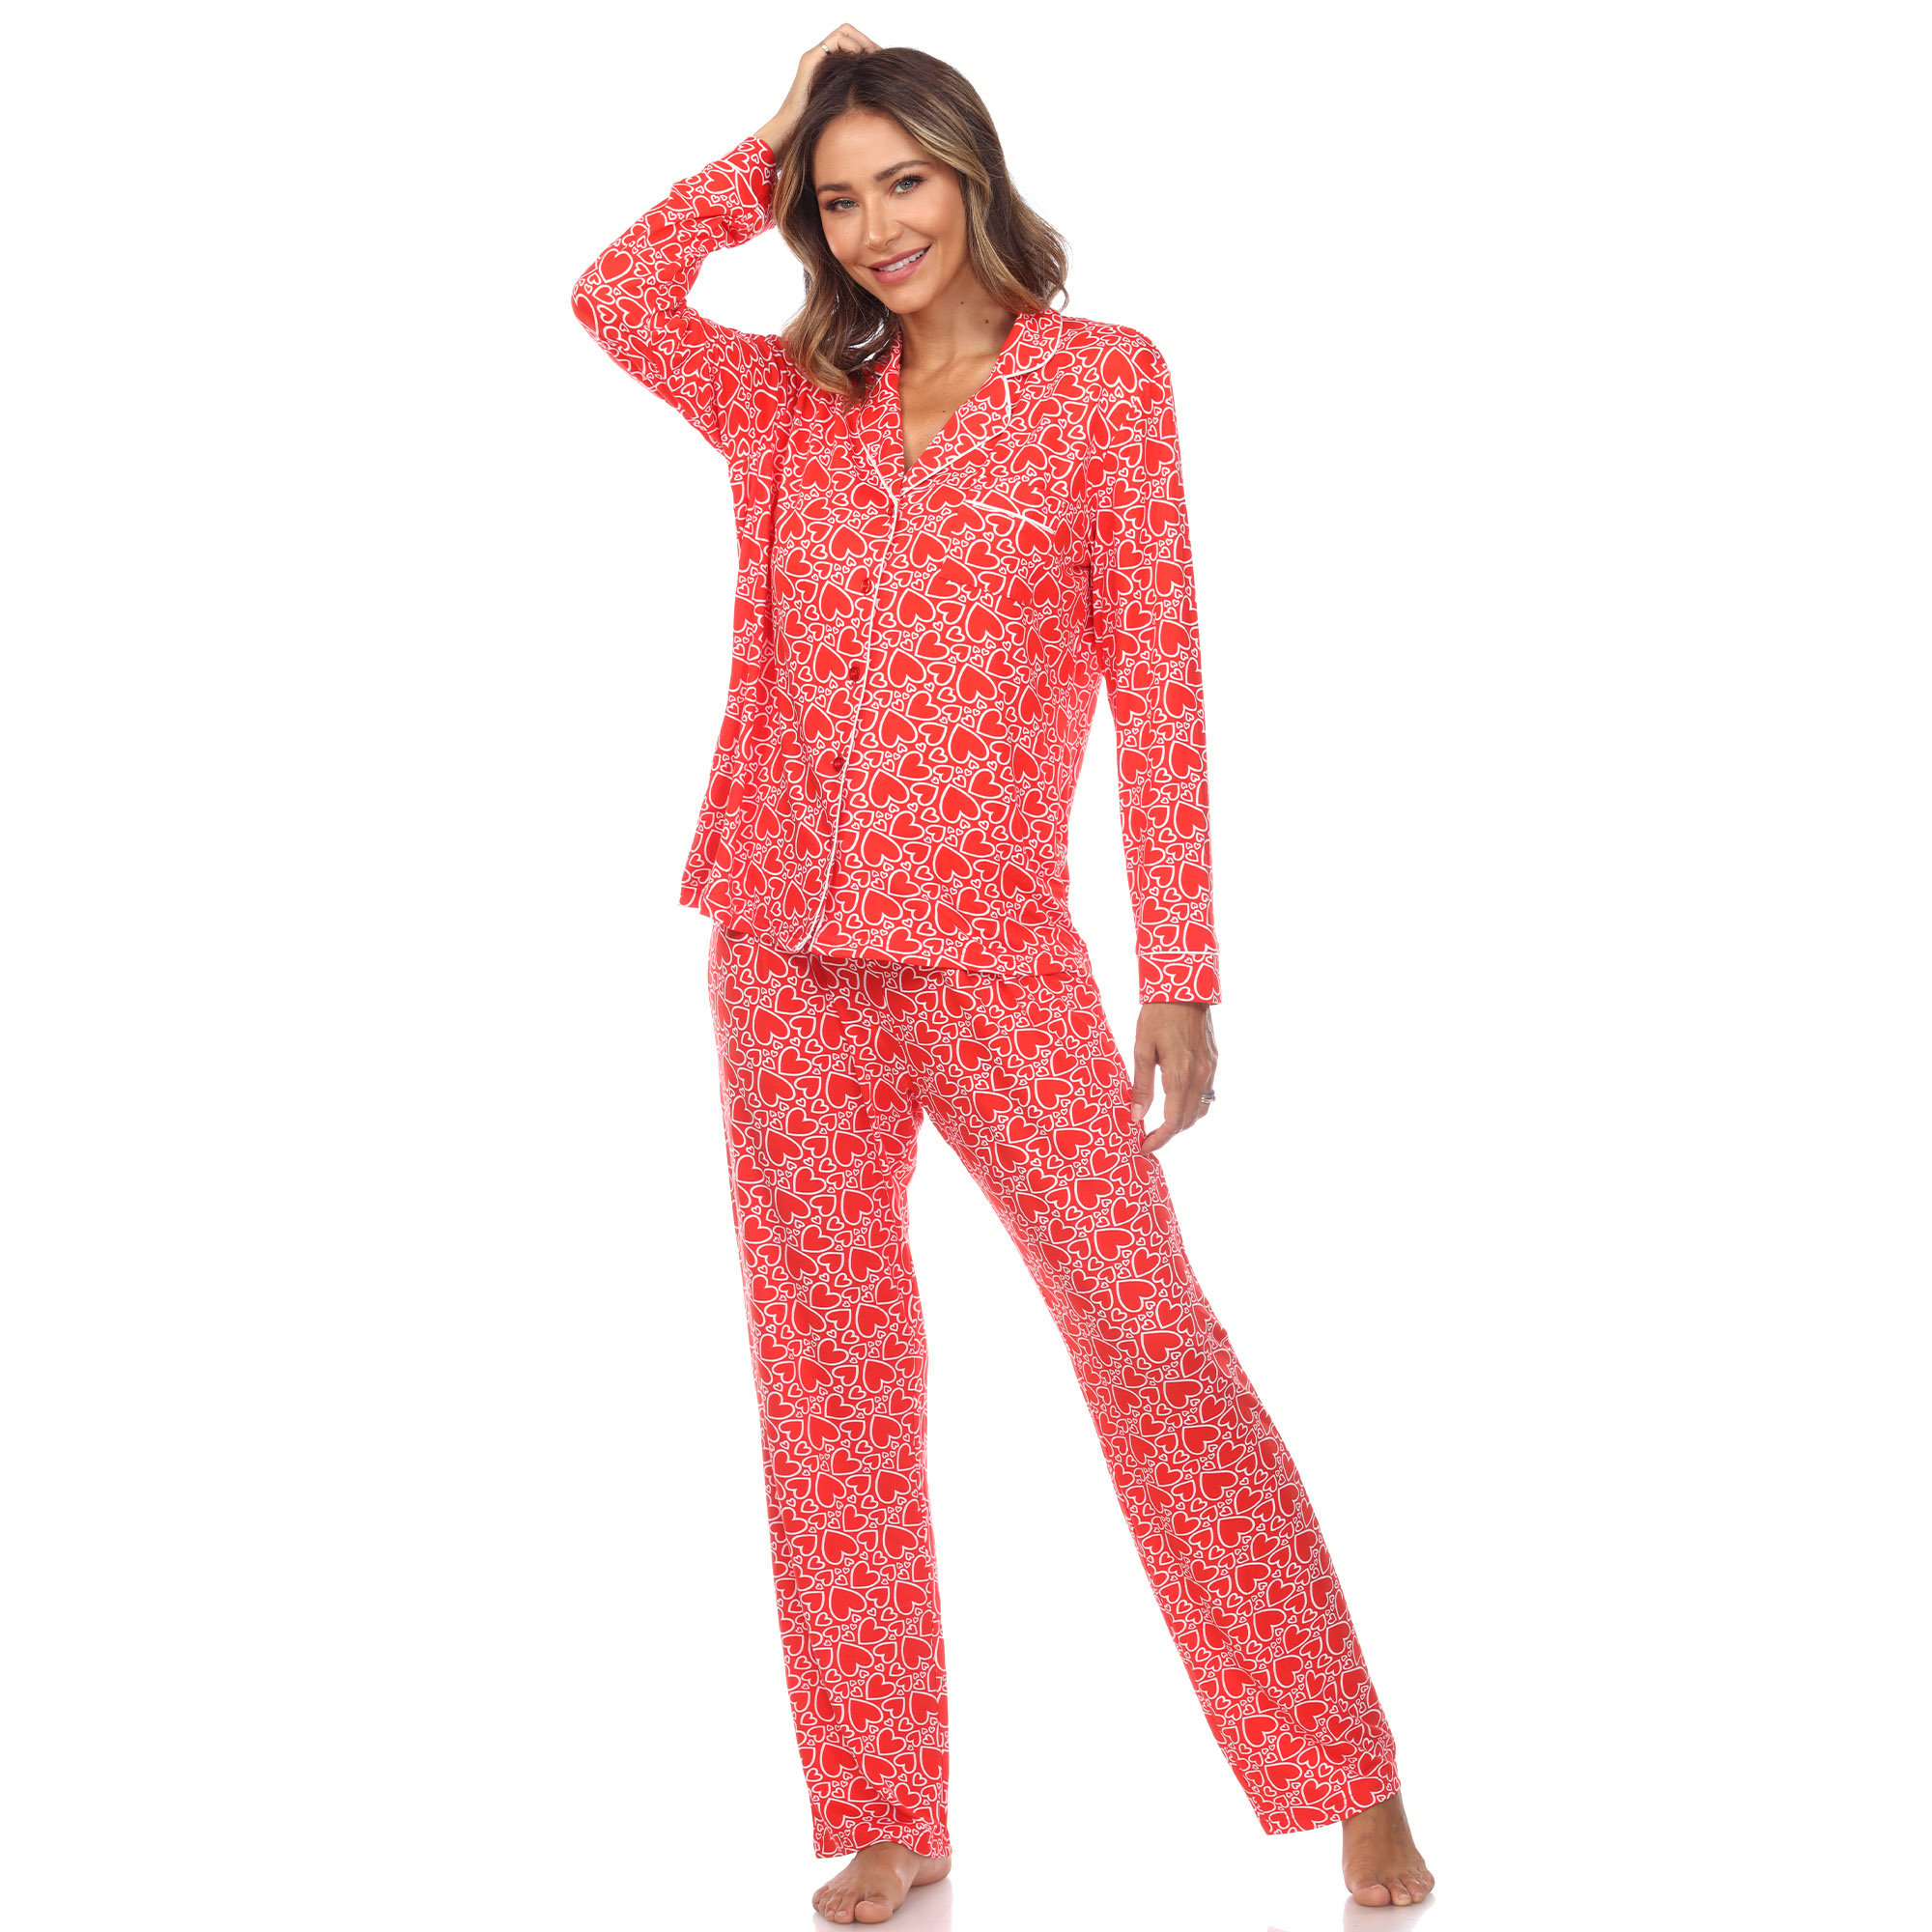 White Mark Women's Long Sleeve Hearts Pajama Set - Red, Large